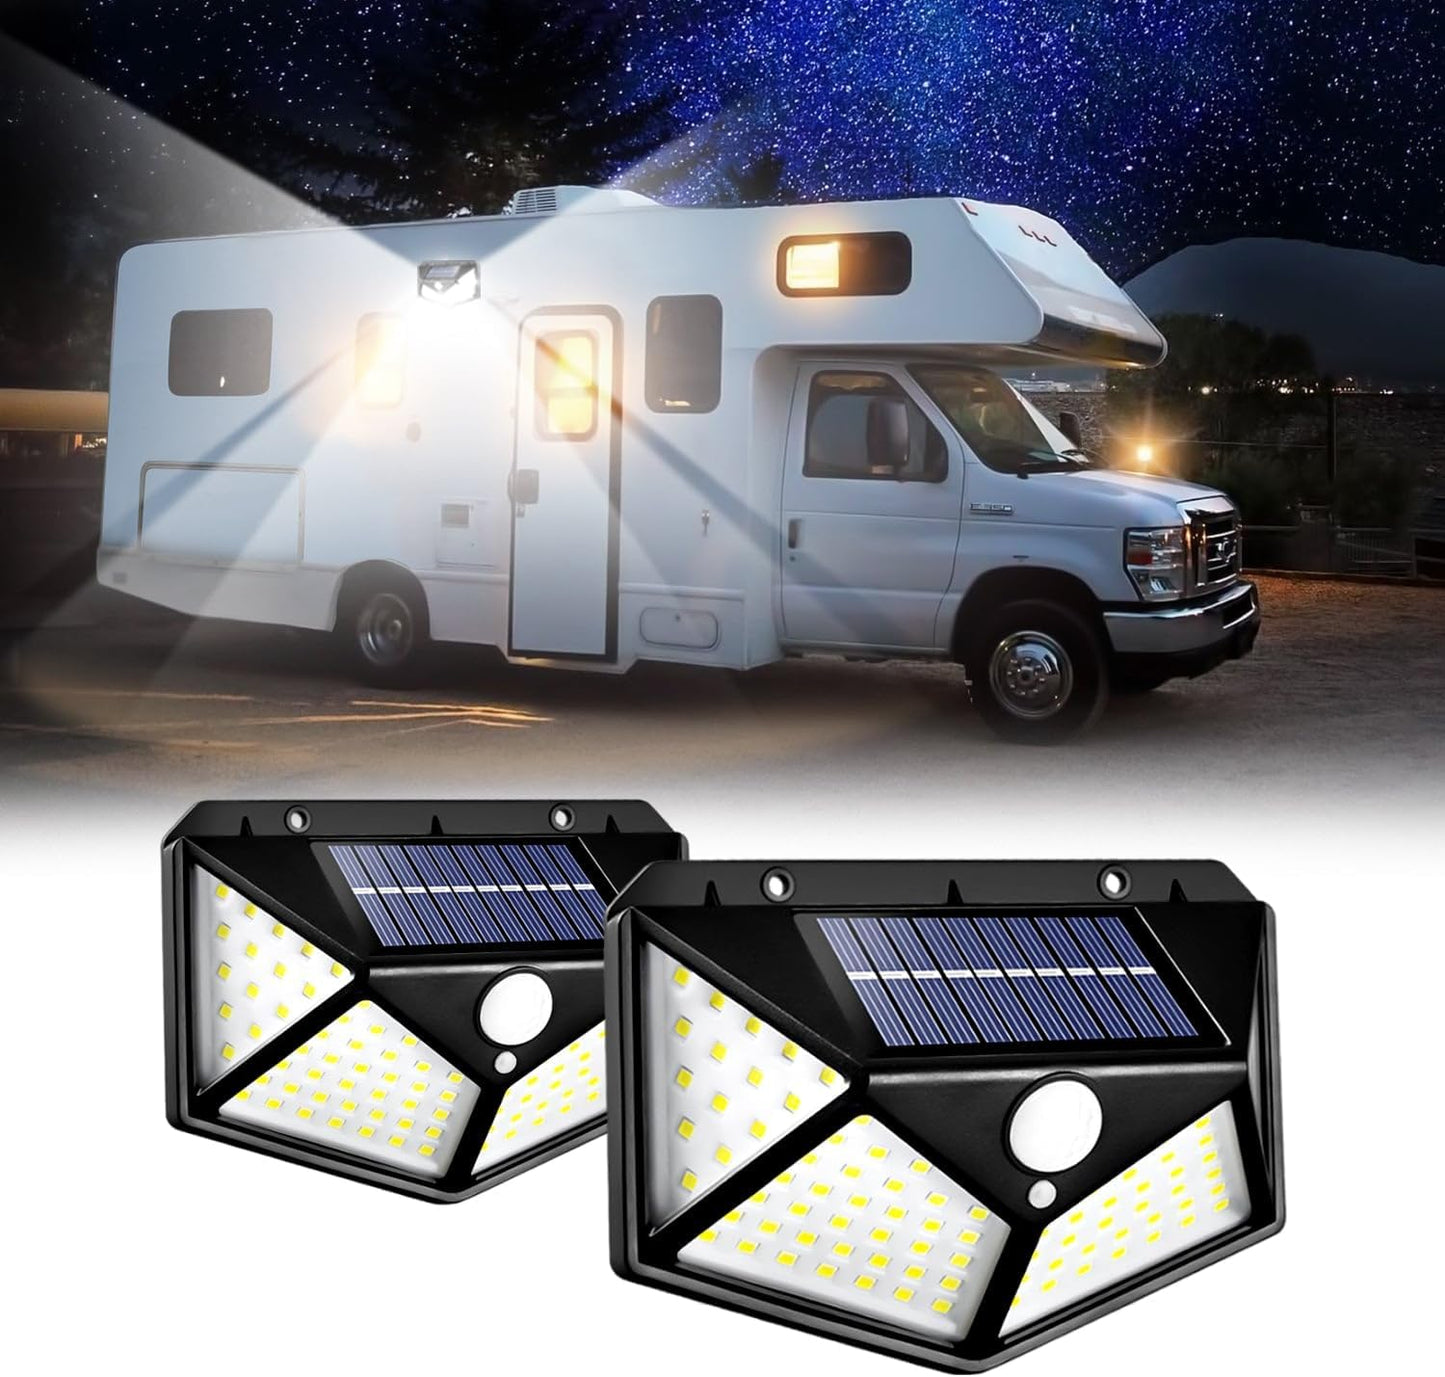 RV Lights Exterior, Solar RV Porch Light RV Awning Lights, Motion Activated Sensor Light, Waterproof RV Outdoor Lights for RV Camper Motorhome Travel Trailer(2 Pack)